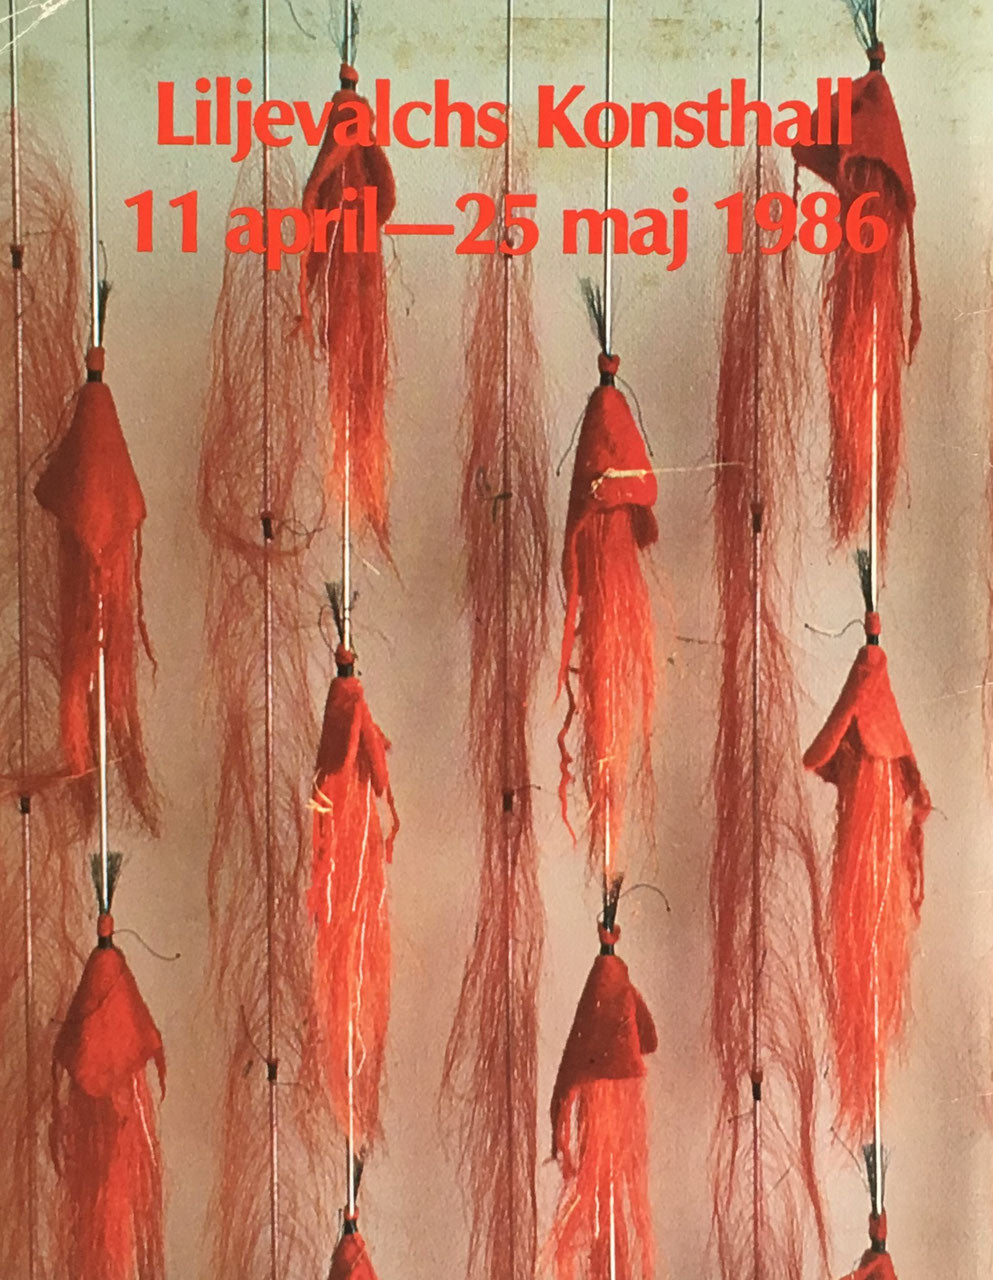 Textil Skulptur liljevalchs konsthall 11 april 25 maj 1986　テキスタイル彫刻　リリエバルク美術館